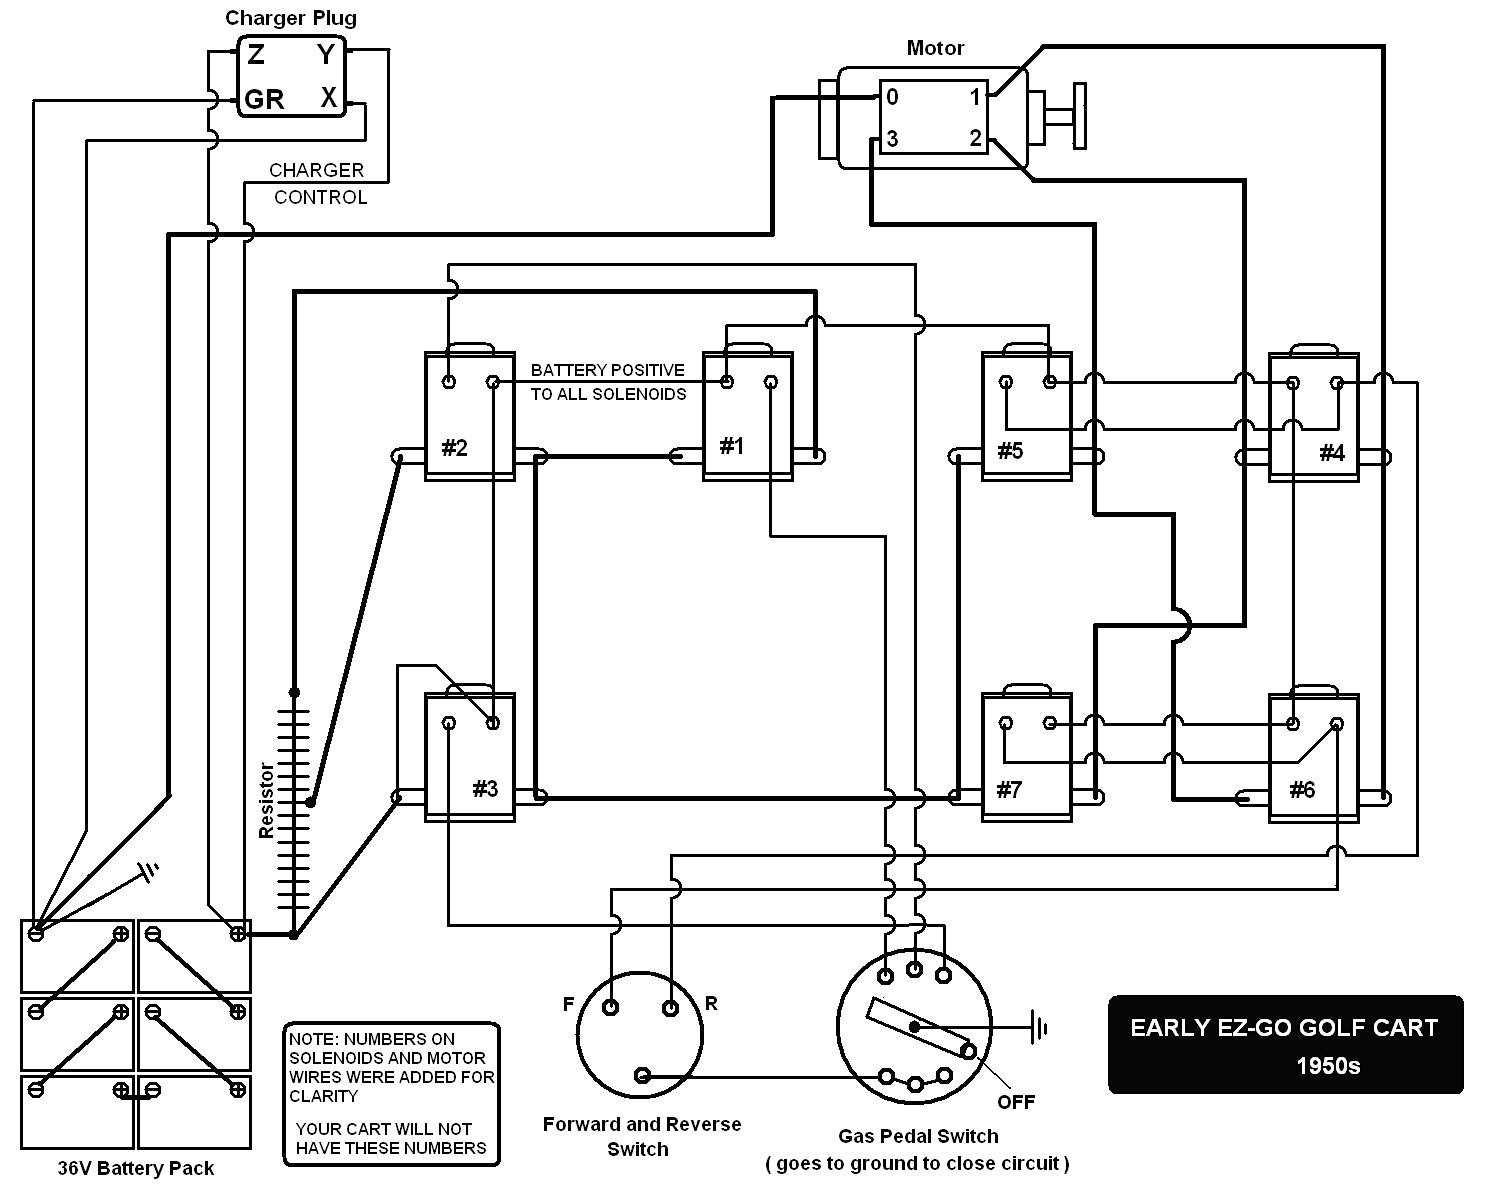 1986 club car wiring diagram elegant 86 club car forward reverse wiring diagram explained wiring diagrams of 1986 club car wiring diagram